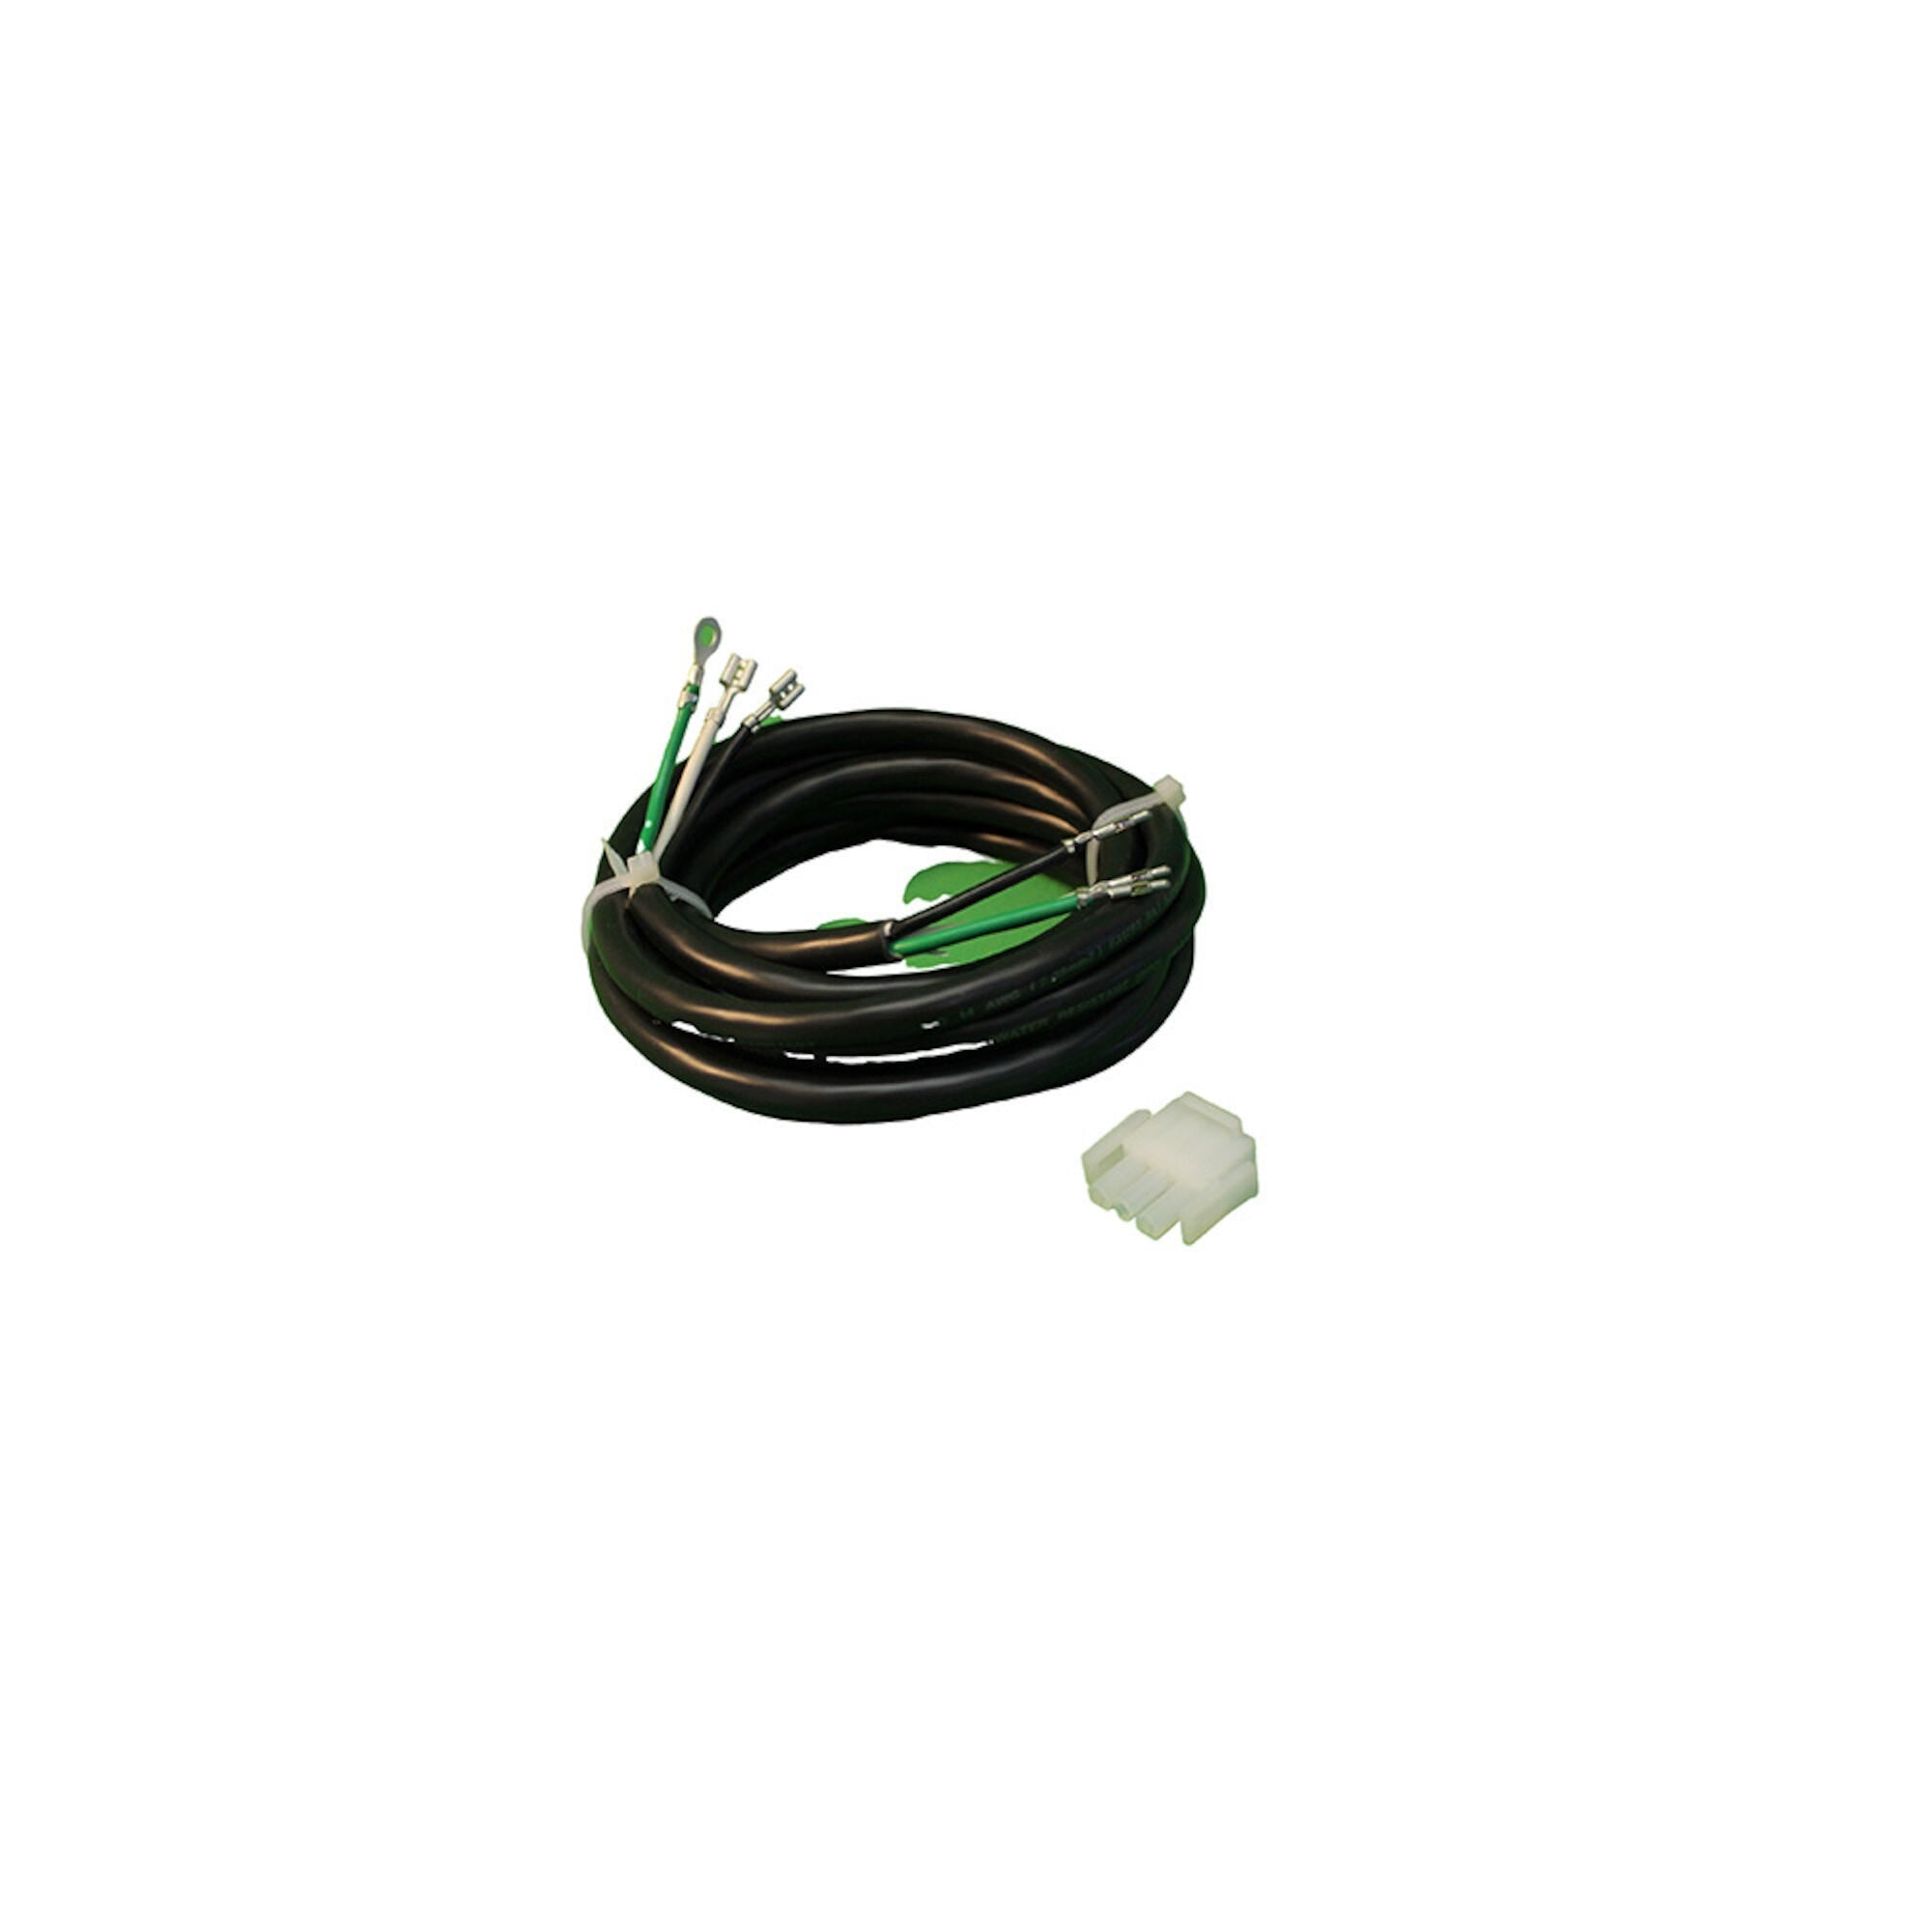 Balboa Pump Cord / Air Blower / Ozone Cord [1 spd] 14/3 amp plug 48" (30-0324-48)